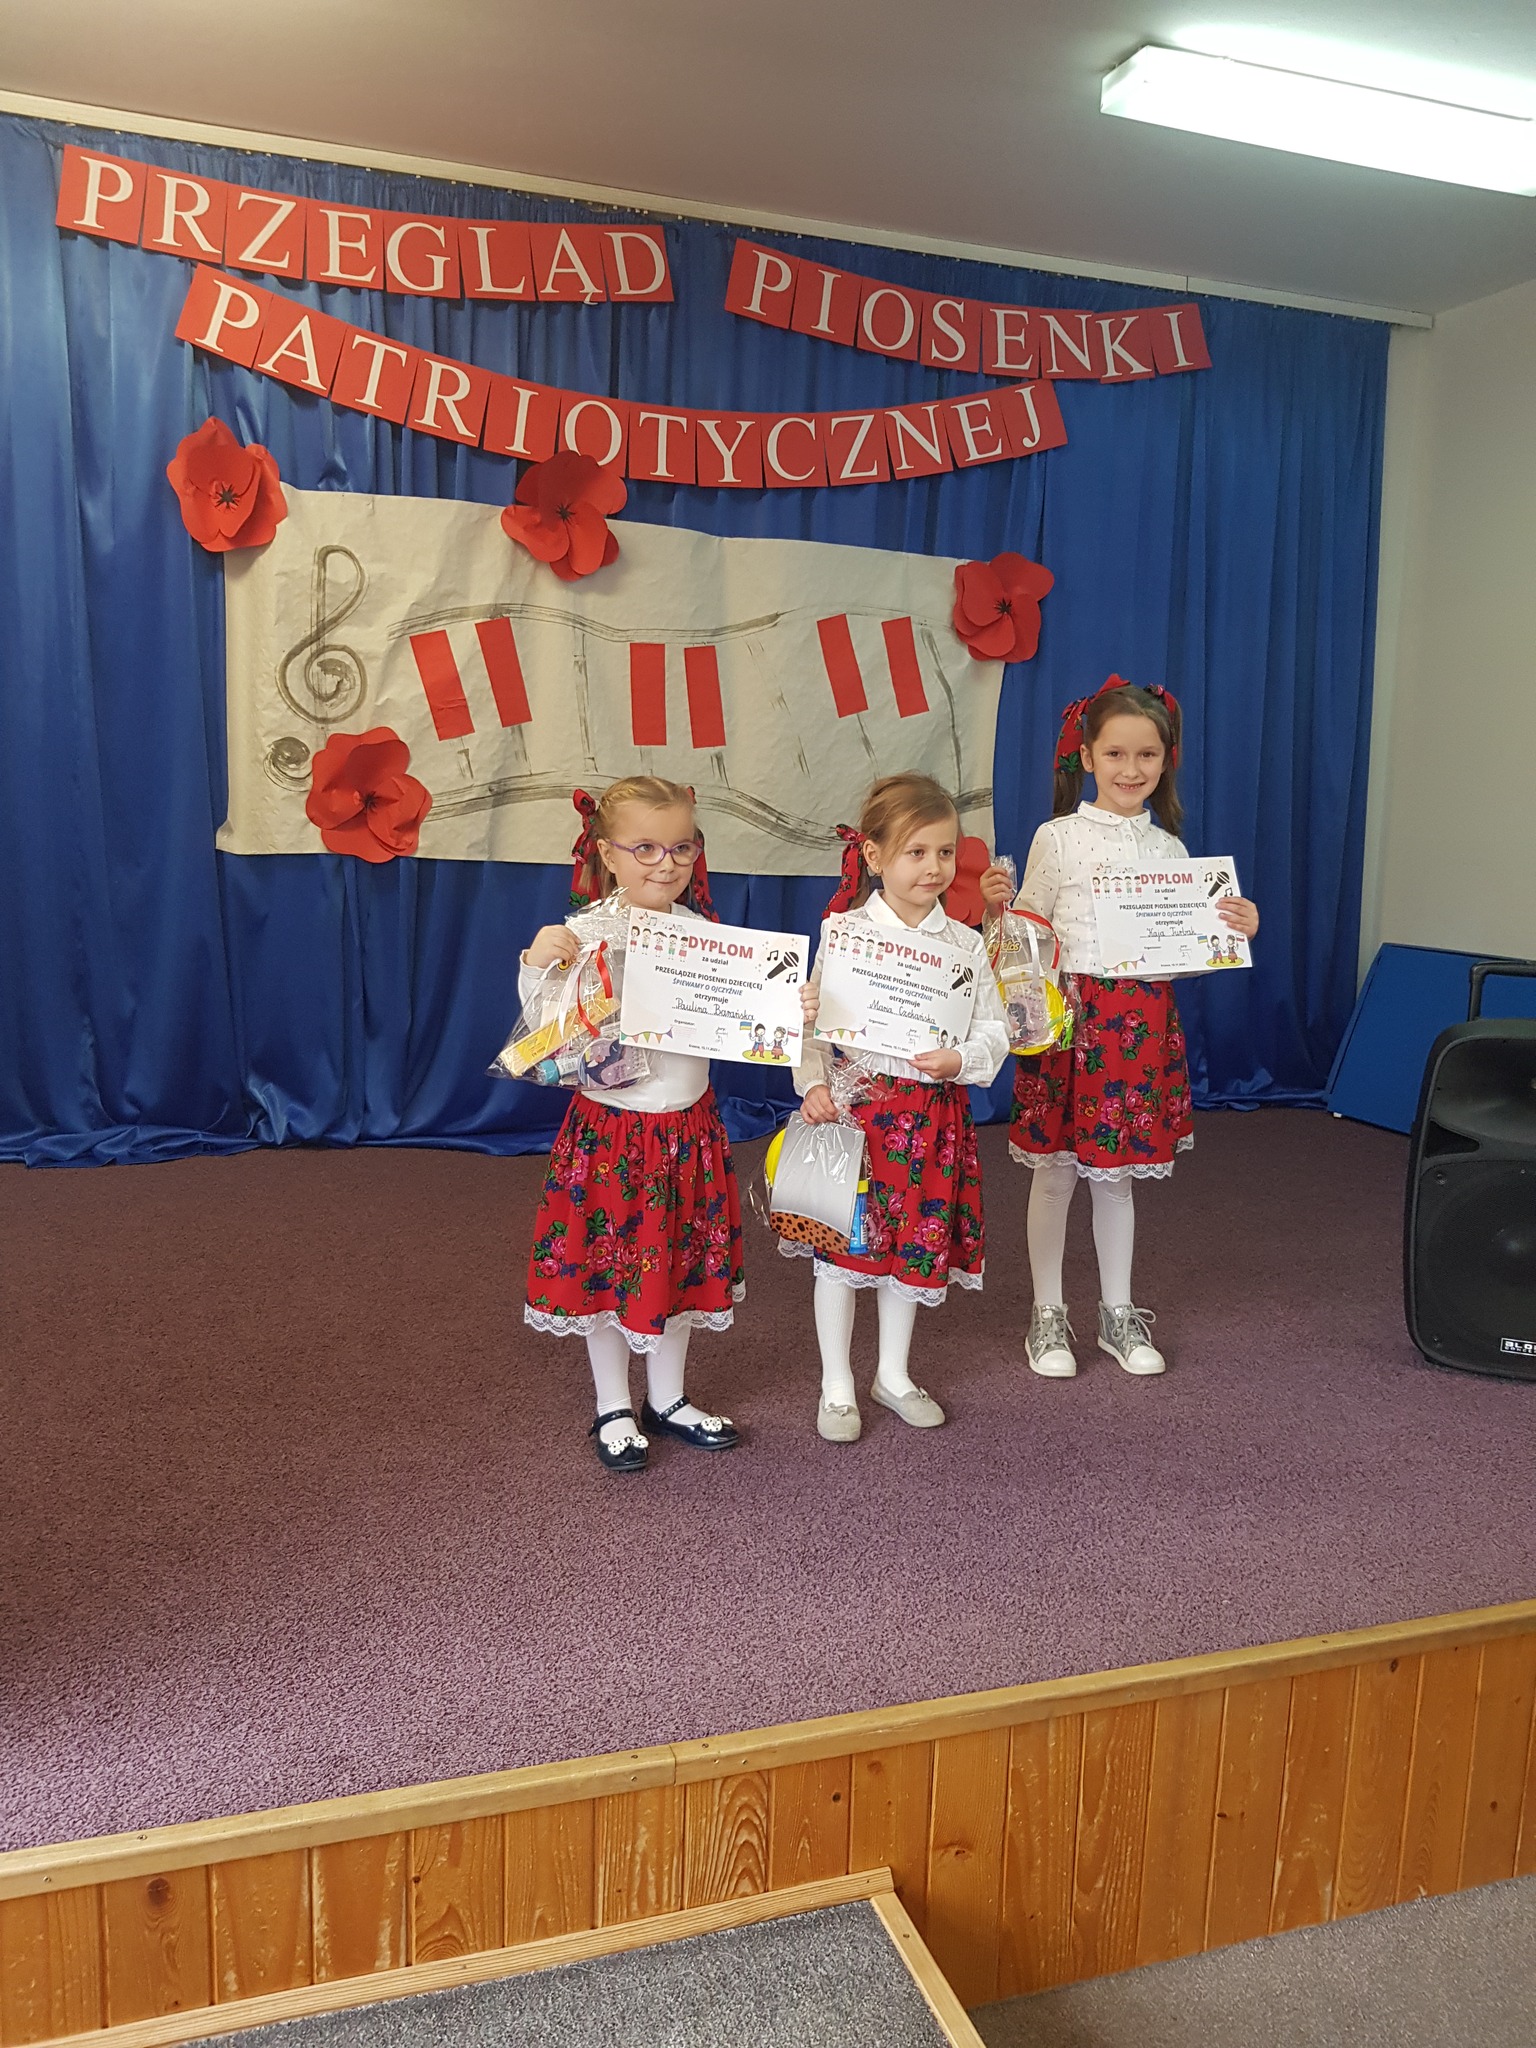 Trzy dziewczynki stoją na scenie w strojach góralskich i pozują do zdjęcia trzymając w ręce dyplomy. W tle widać dekorację z napisem "Przegląd Piosenki Patriotycznej".